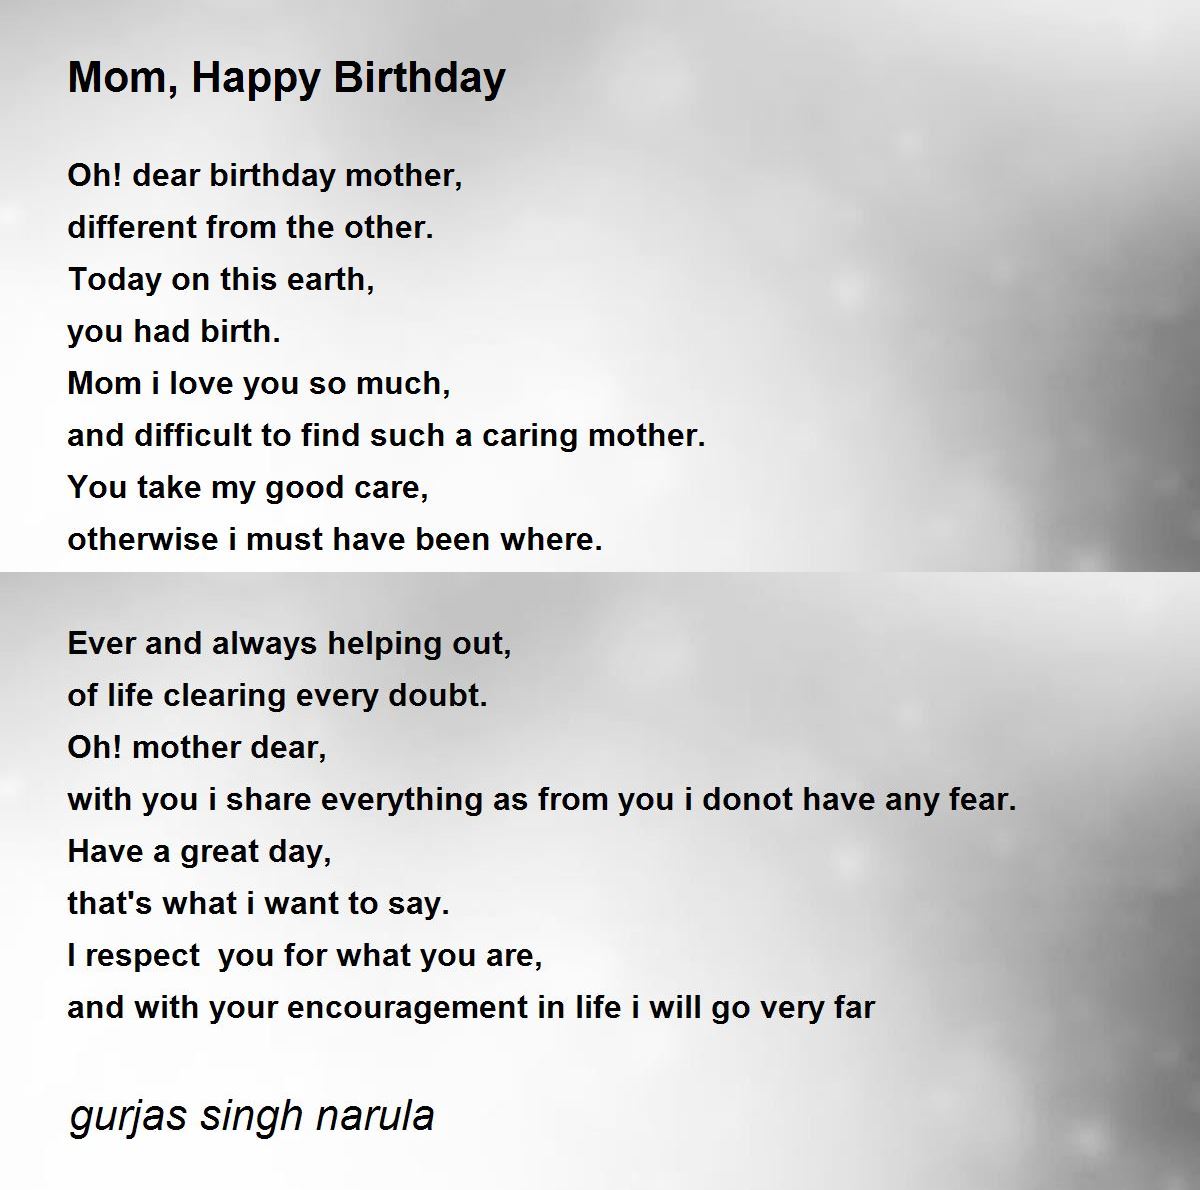 Mom, Happy Birthday - Mom, Happy Birthday Poem by gurjas singh narula